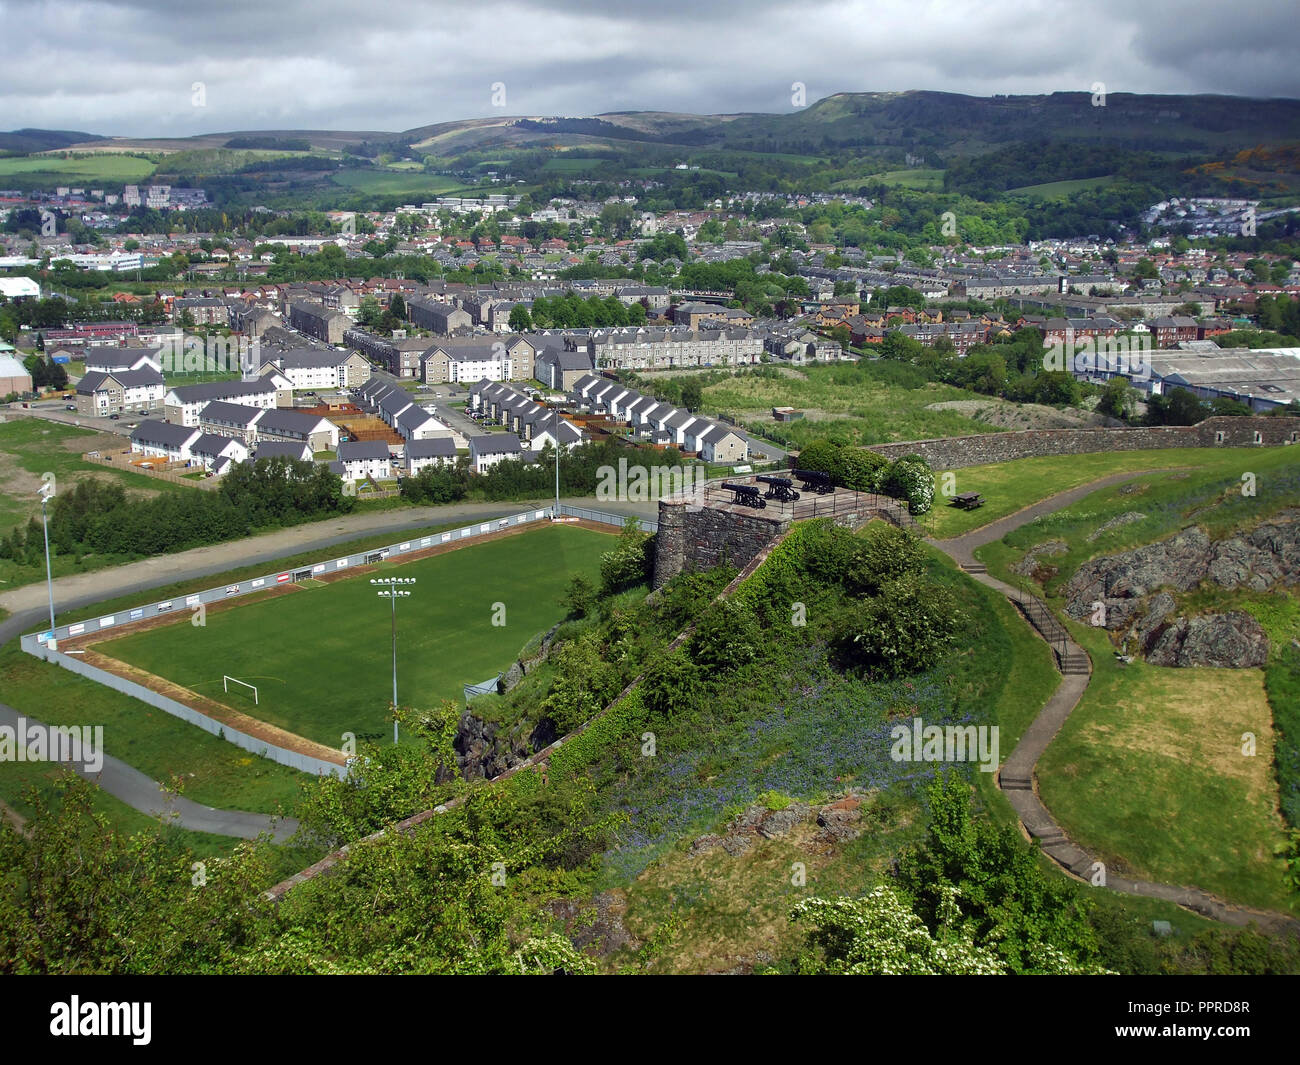 La ville écossaise de Dumbarton comme vu du haut de Dumbarton Castle sur la Clyde près de Glasgow. Les canons du château de Dumbarton est visible au centre de la photo. Banque D'Images